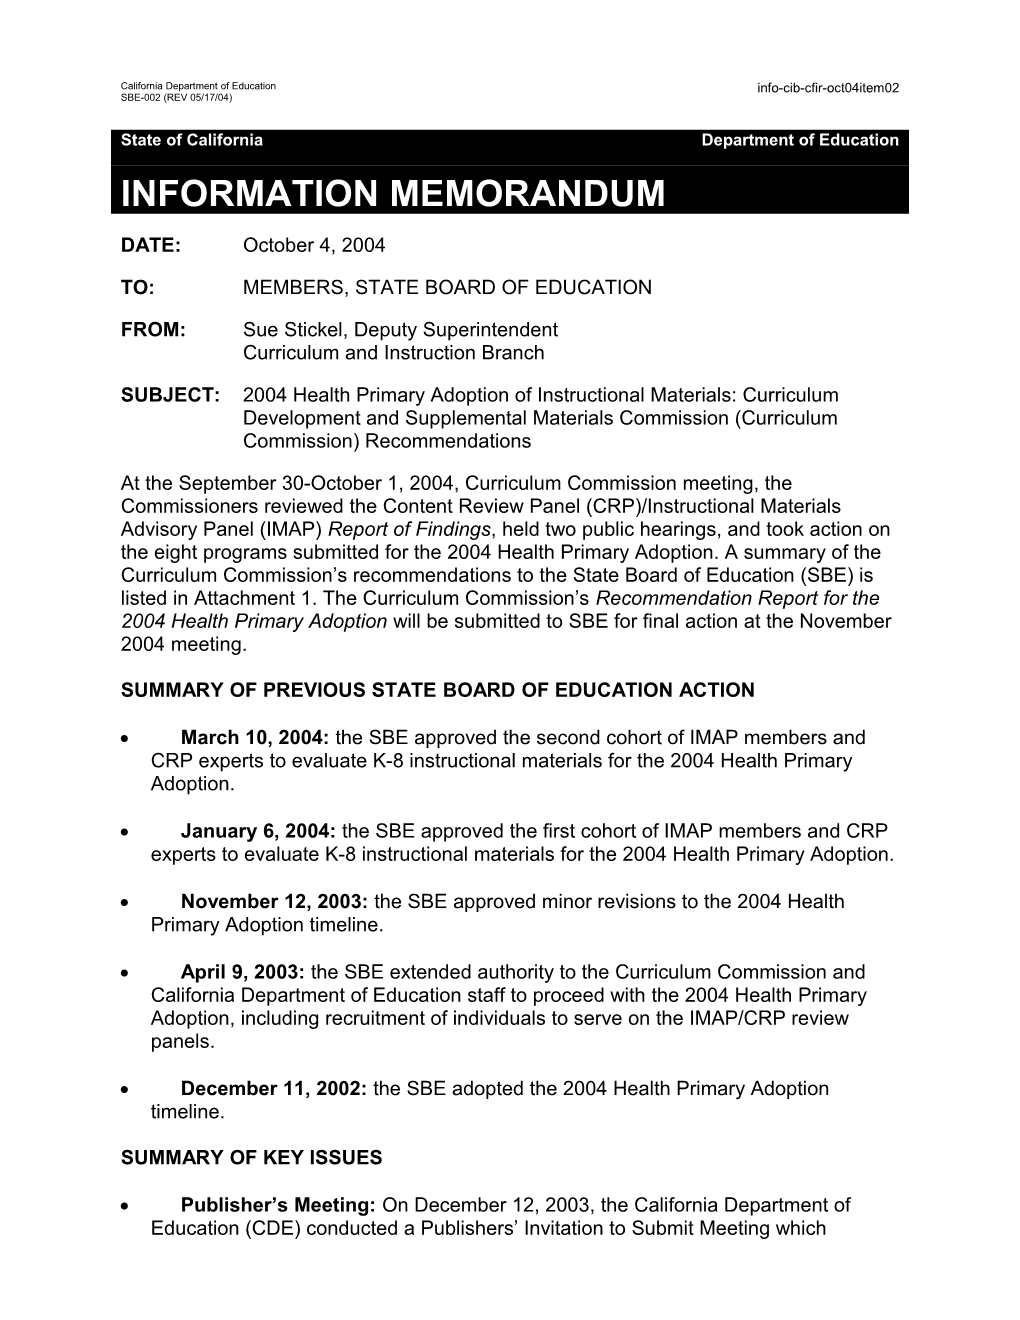 October 2004 CFIR Item 2 - Information Memorandum (CA State Board of Education)